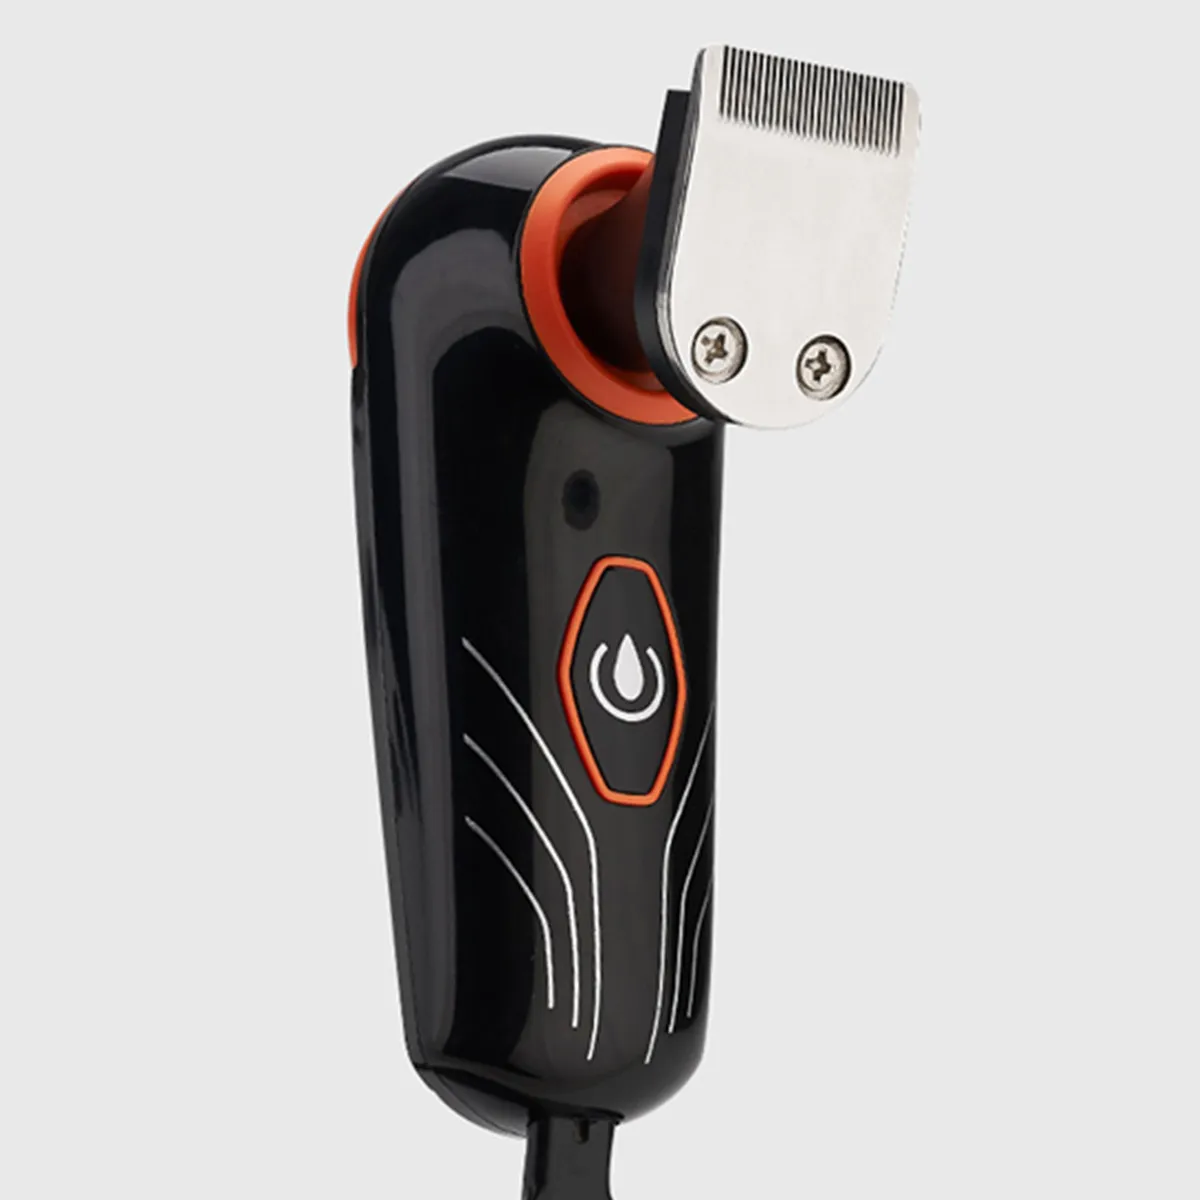 4D машинка для стрижки волос 2 в 1 5 лезвий электрическая бритва триммер для бороды бритва для мужчин водонепроницаемый роторный станок для бритья